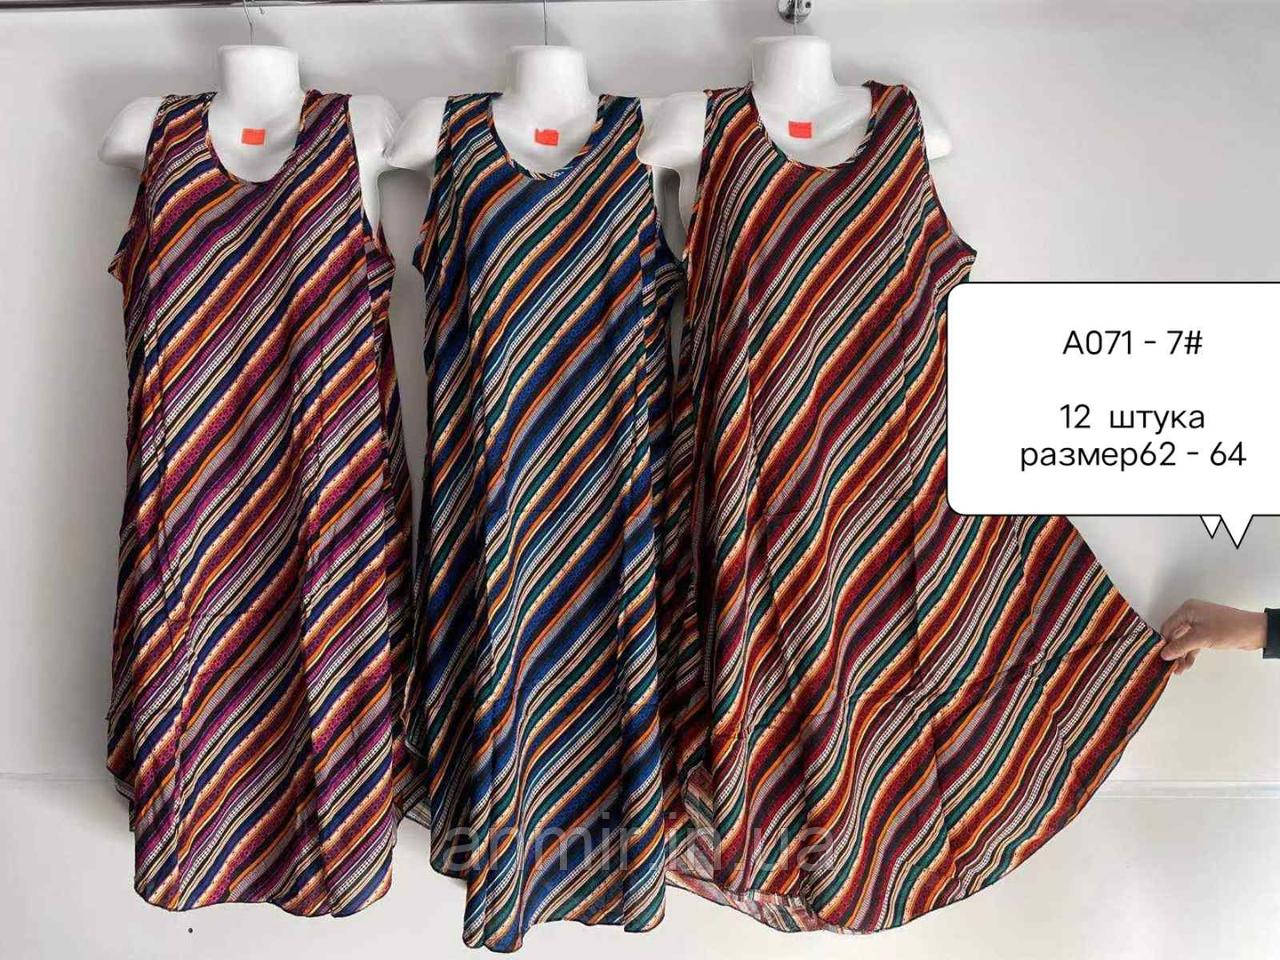 Жіноче розкльошене батальне плаття CИММЕТРІЯ розмір 62-64,мікс кольорів у пакованні